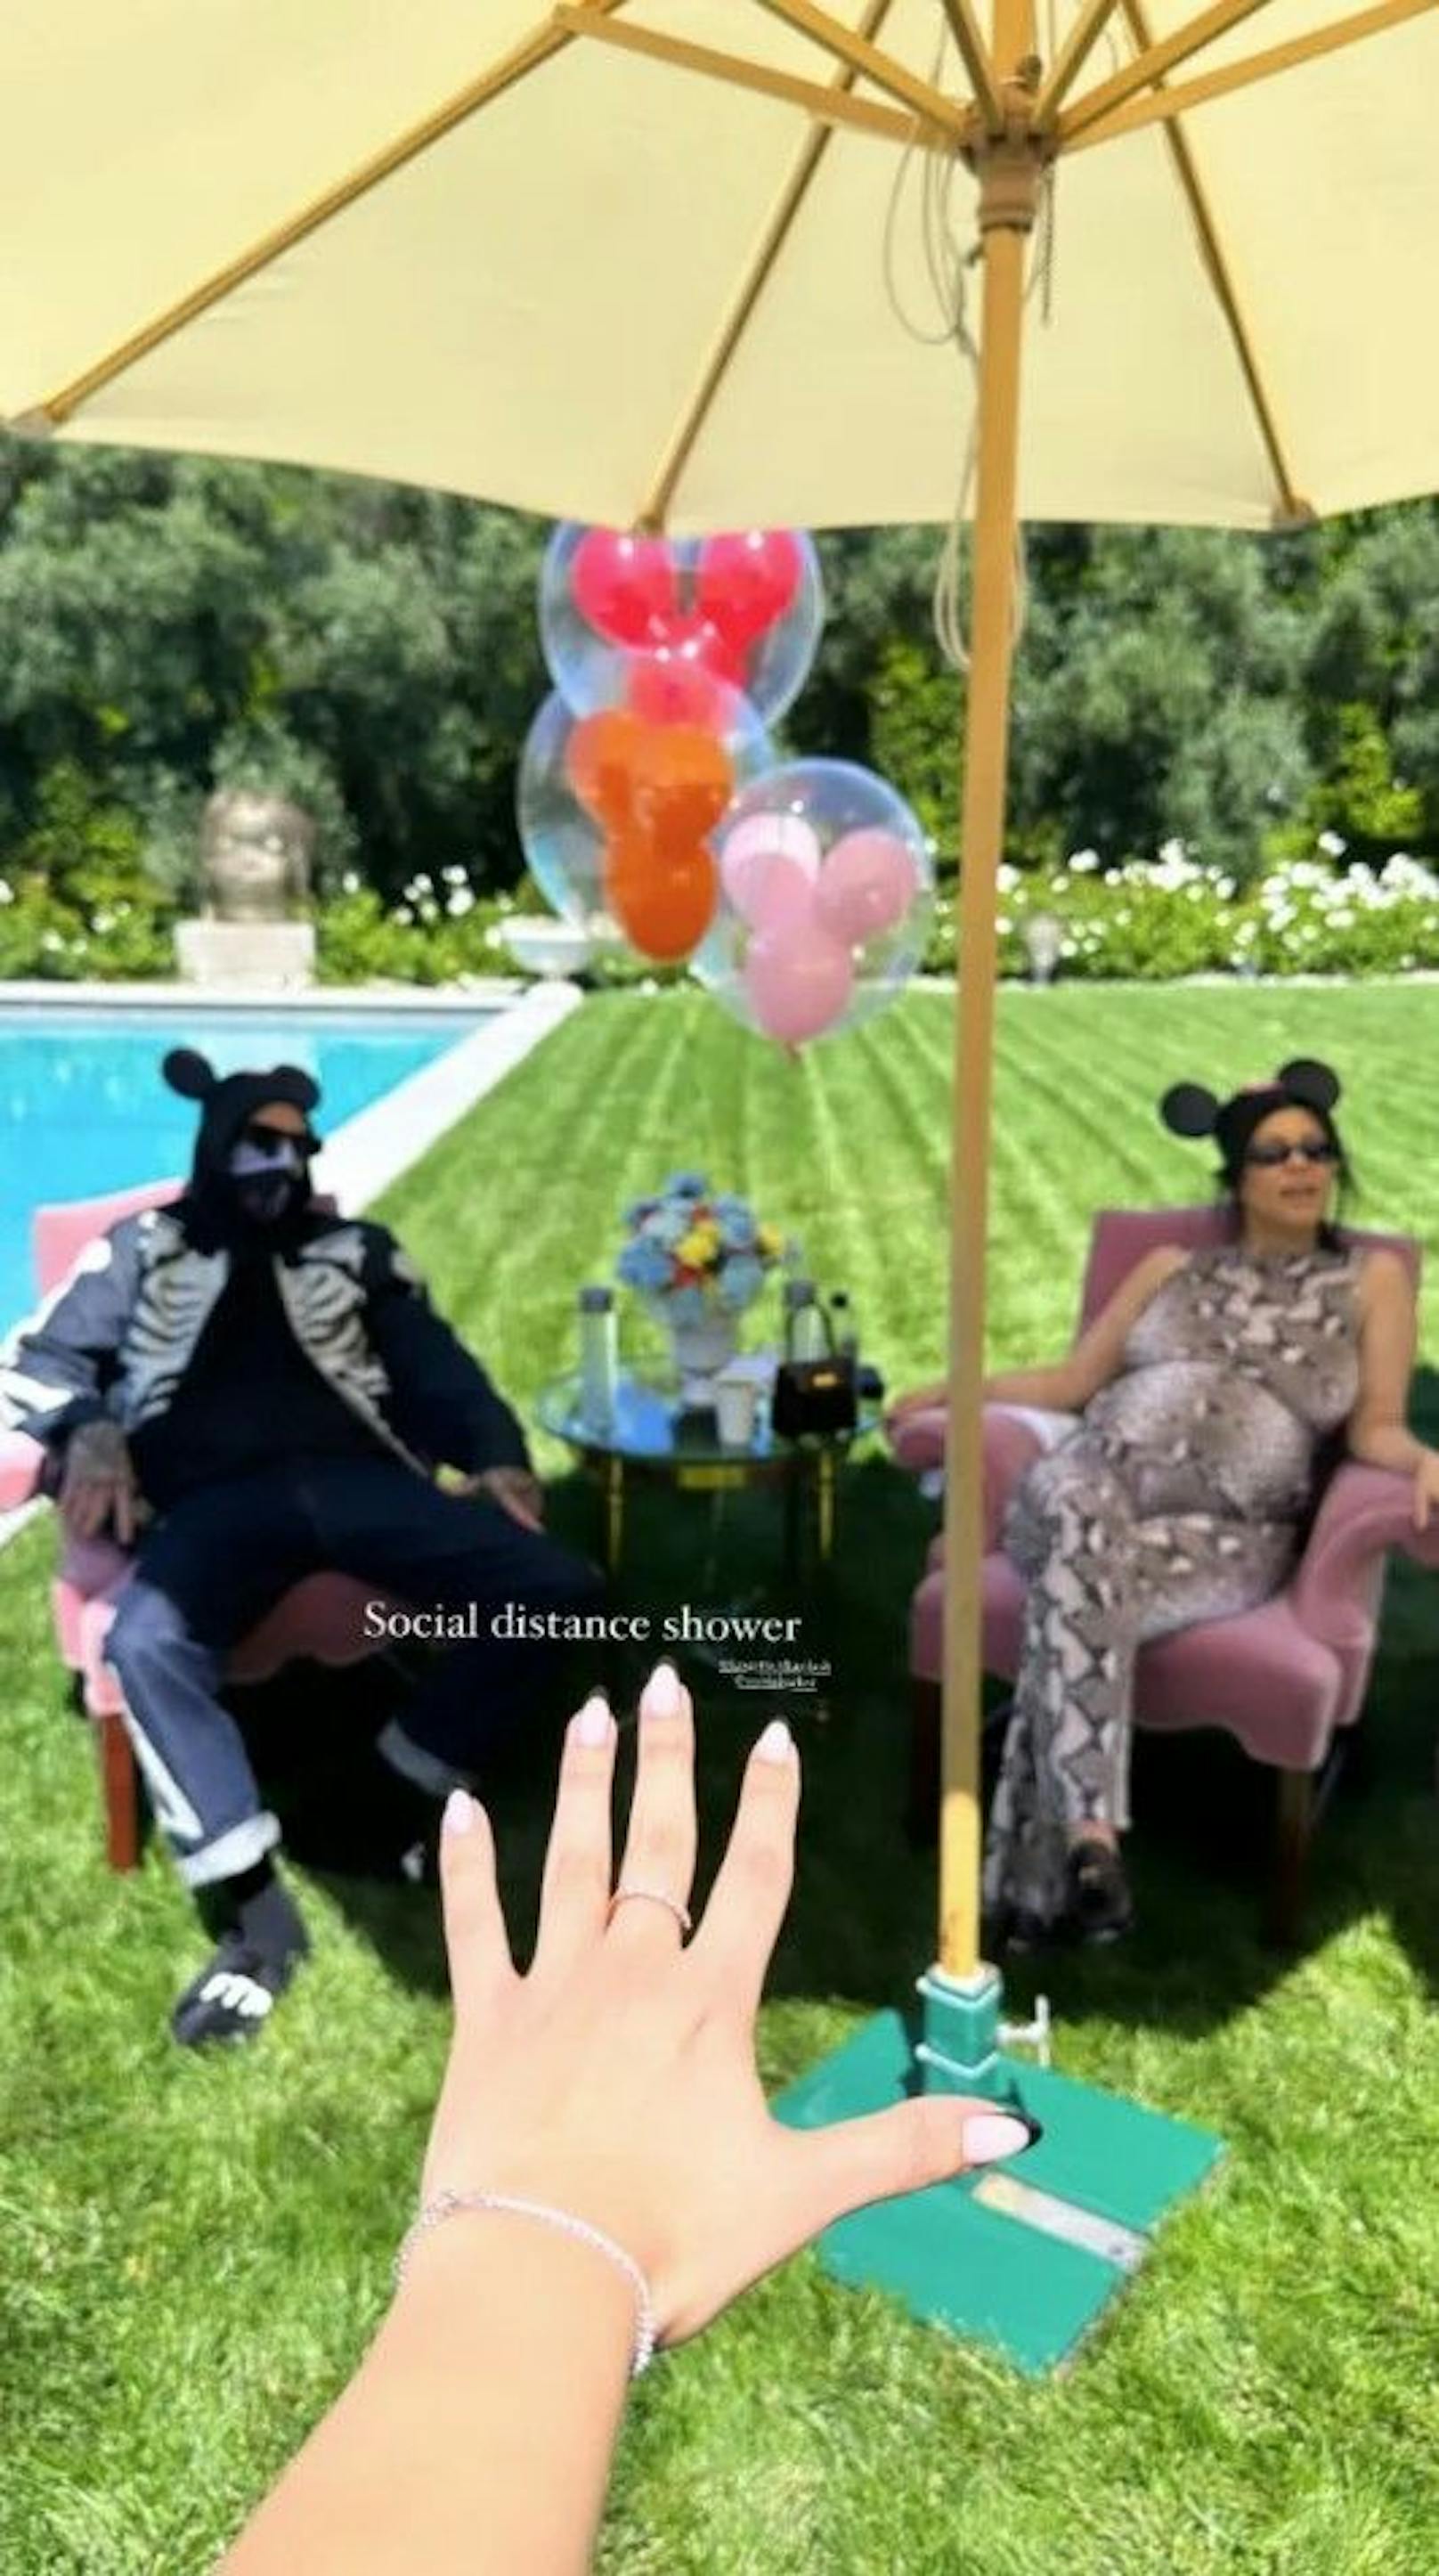 Auf Instagram findet man in diversen Storys Einblicke in die Feier. Zur Sicherheit mussten die Gäste wohl Abstand vom Paar nehmen.